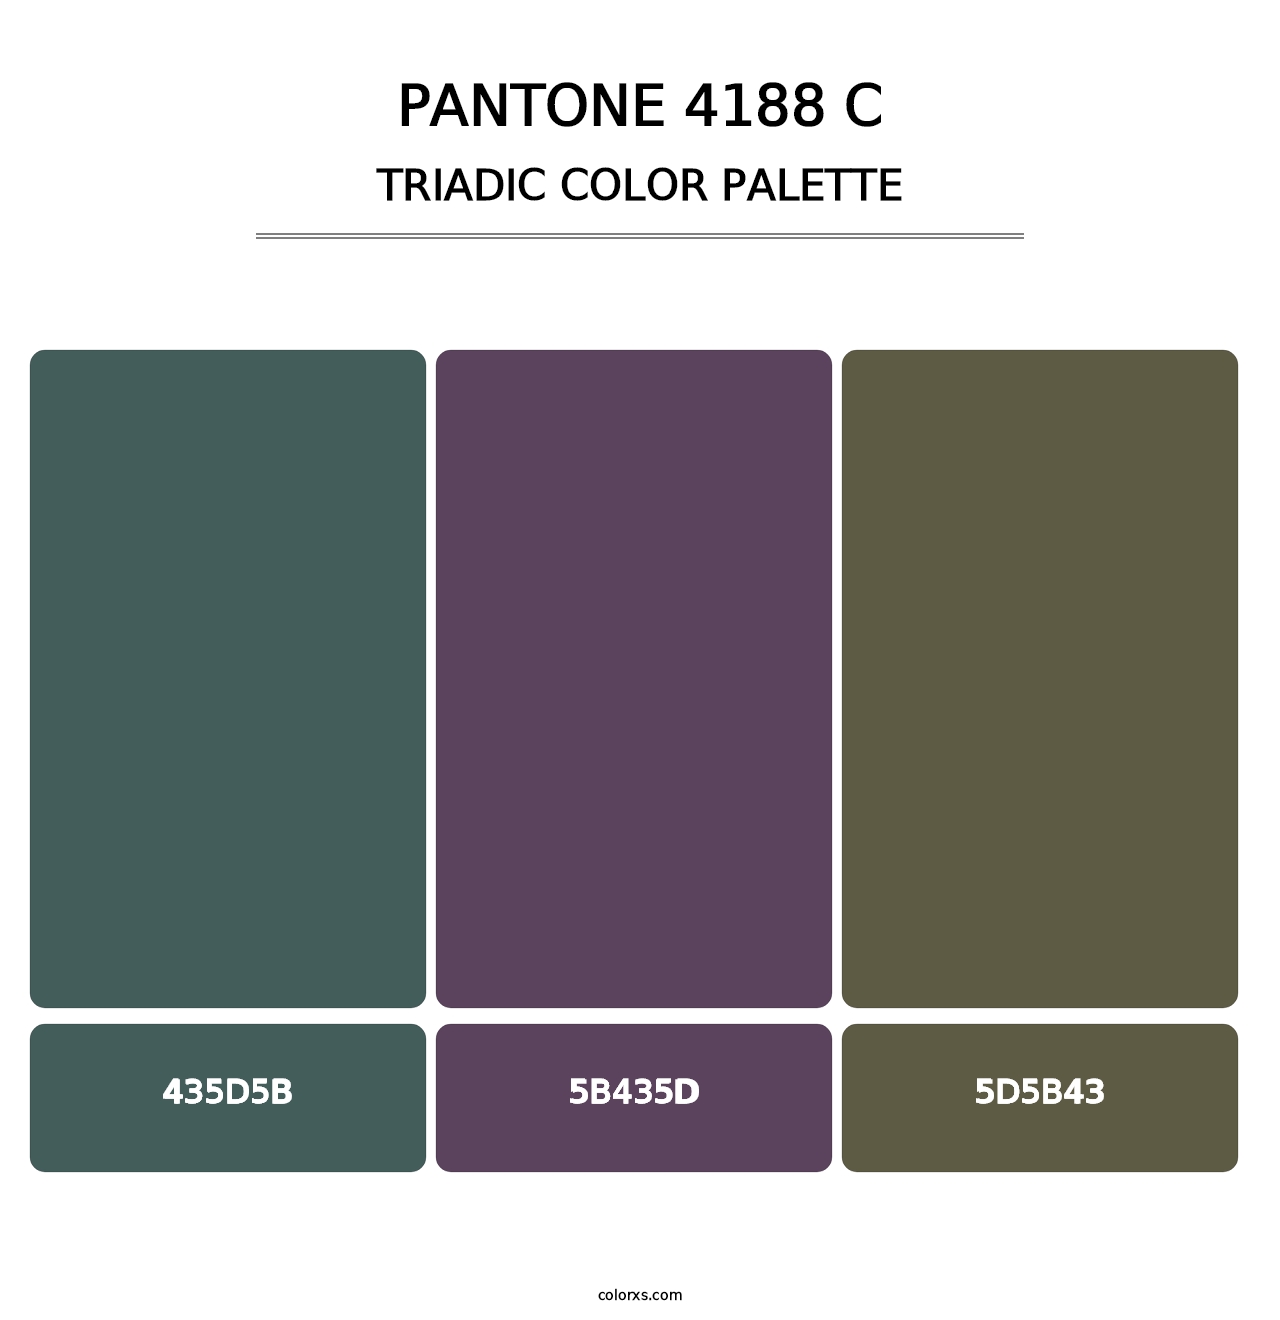 PANTONE 4188 C - Triadic Color Palette